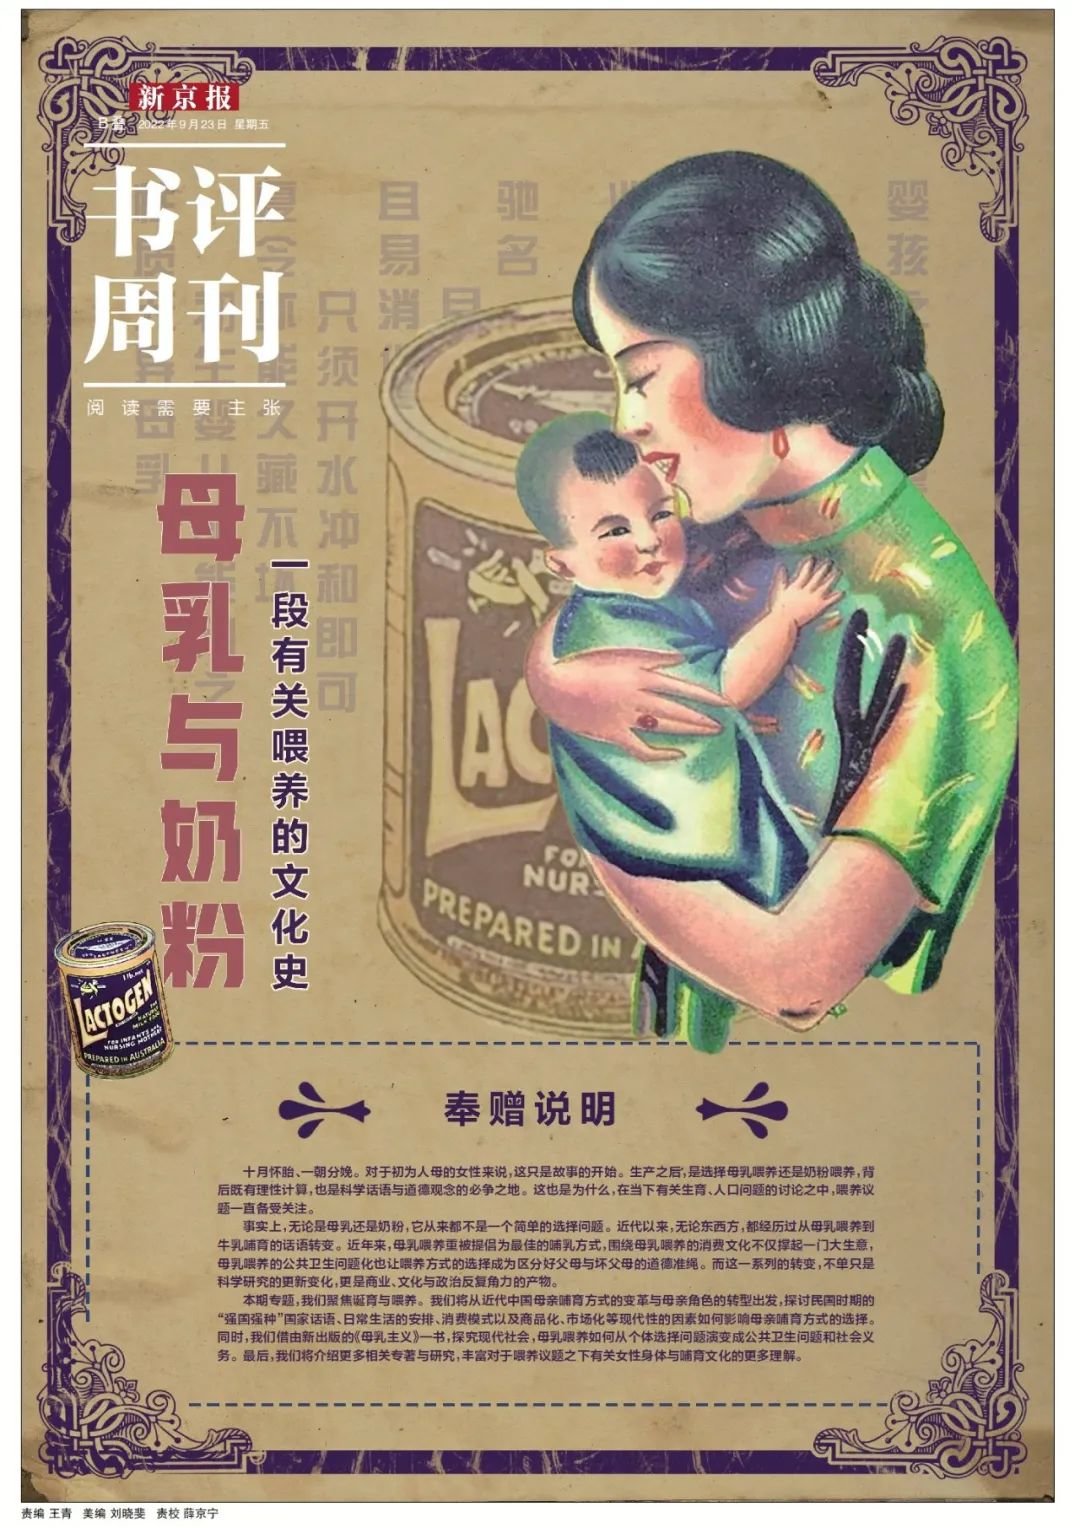 本文出自《新京报·书评周刊》9月23日专题《母乳与奶粉：一段有关喂养的文化史》的B02-B03版。